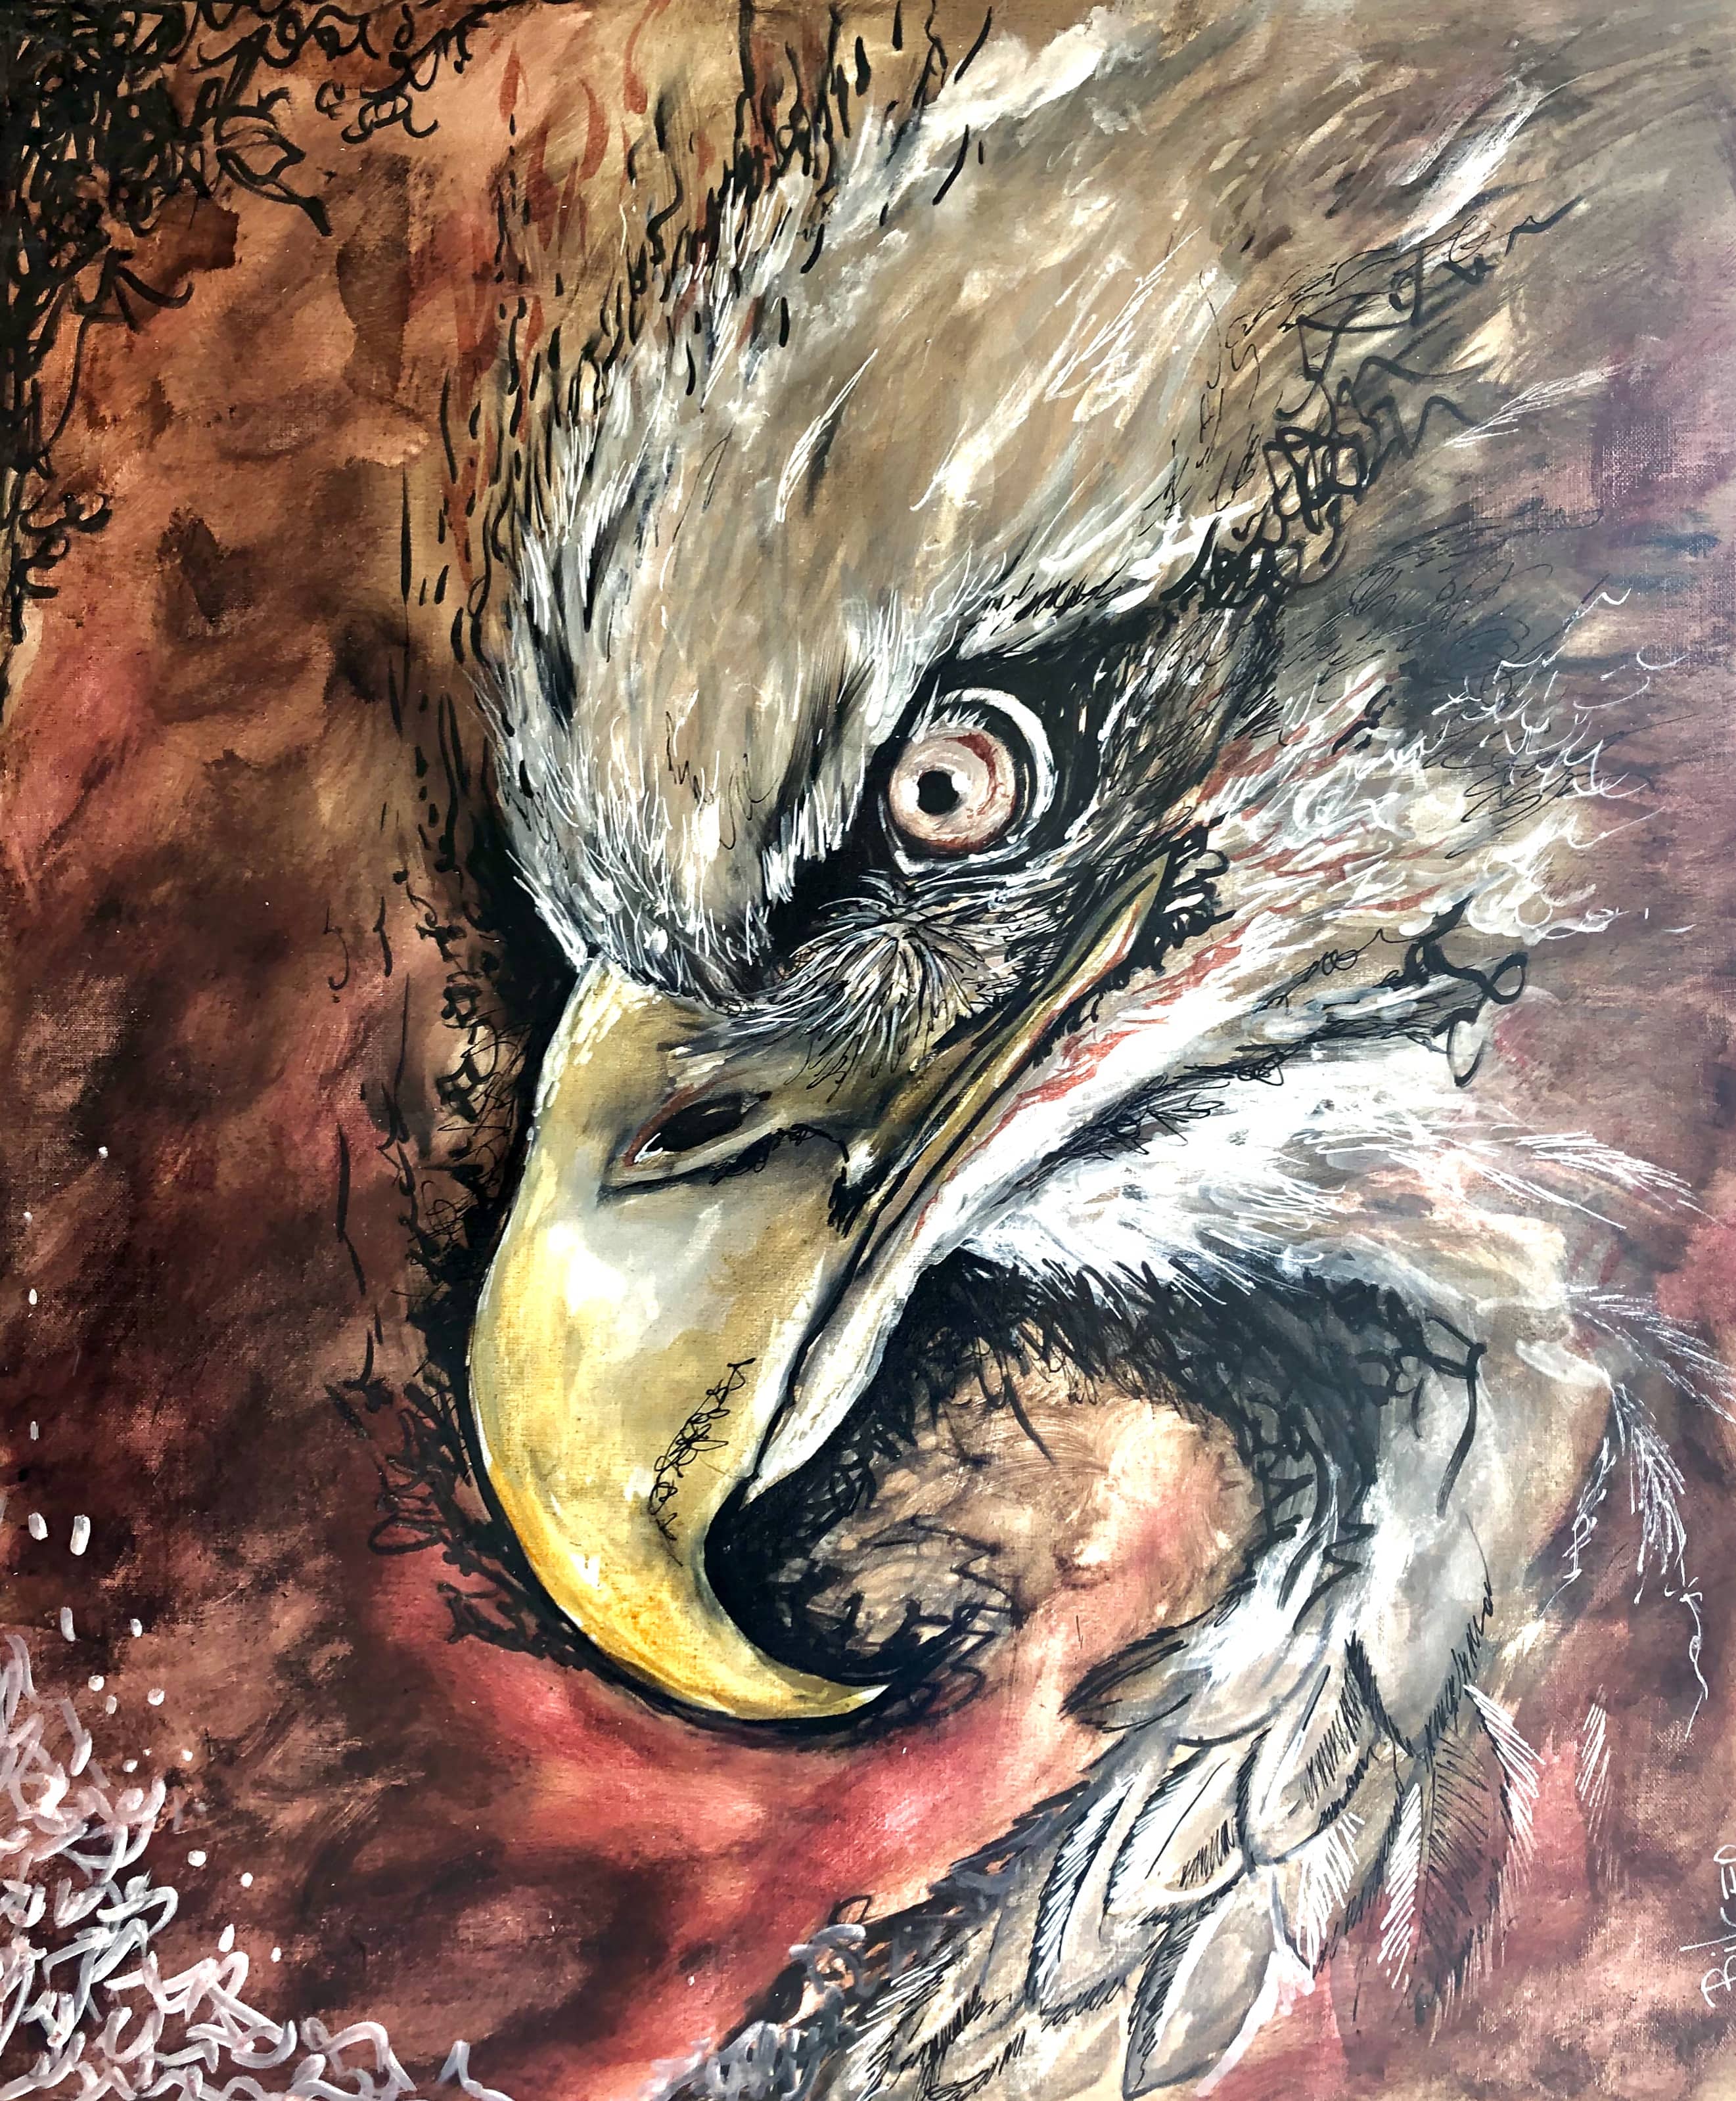 "Eagle", 2019. 1 image